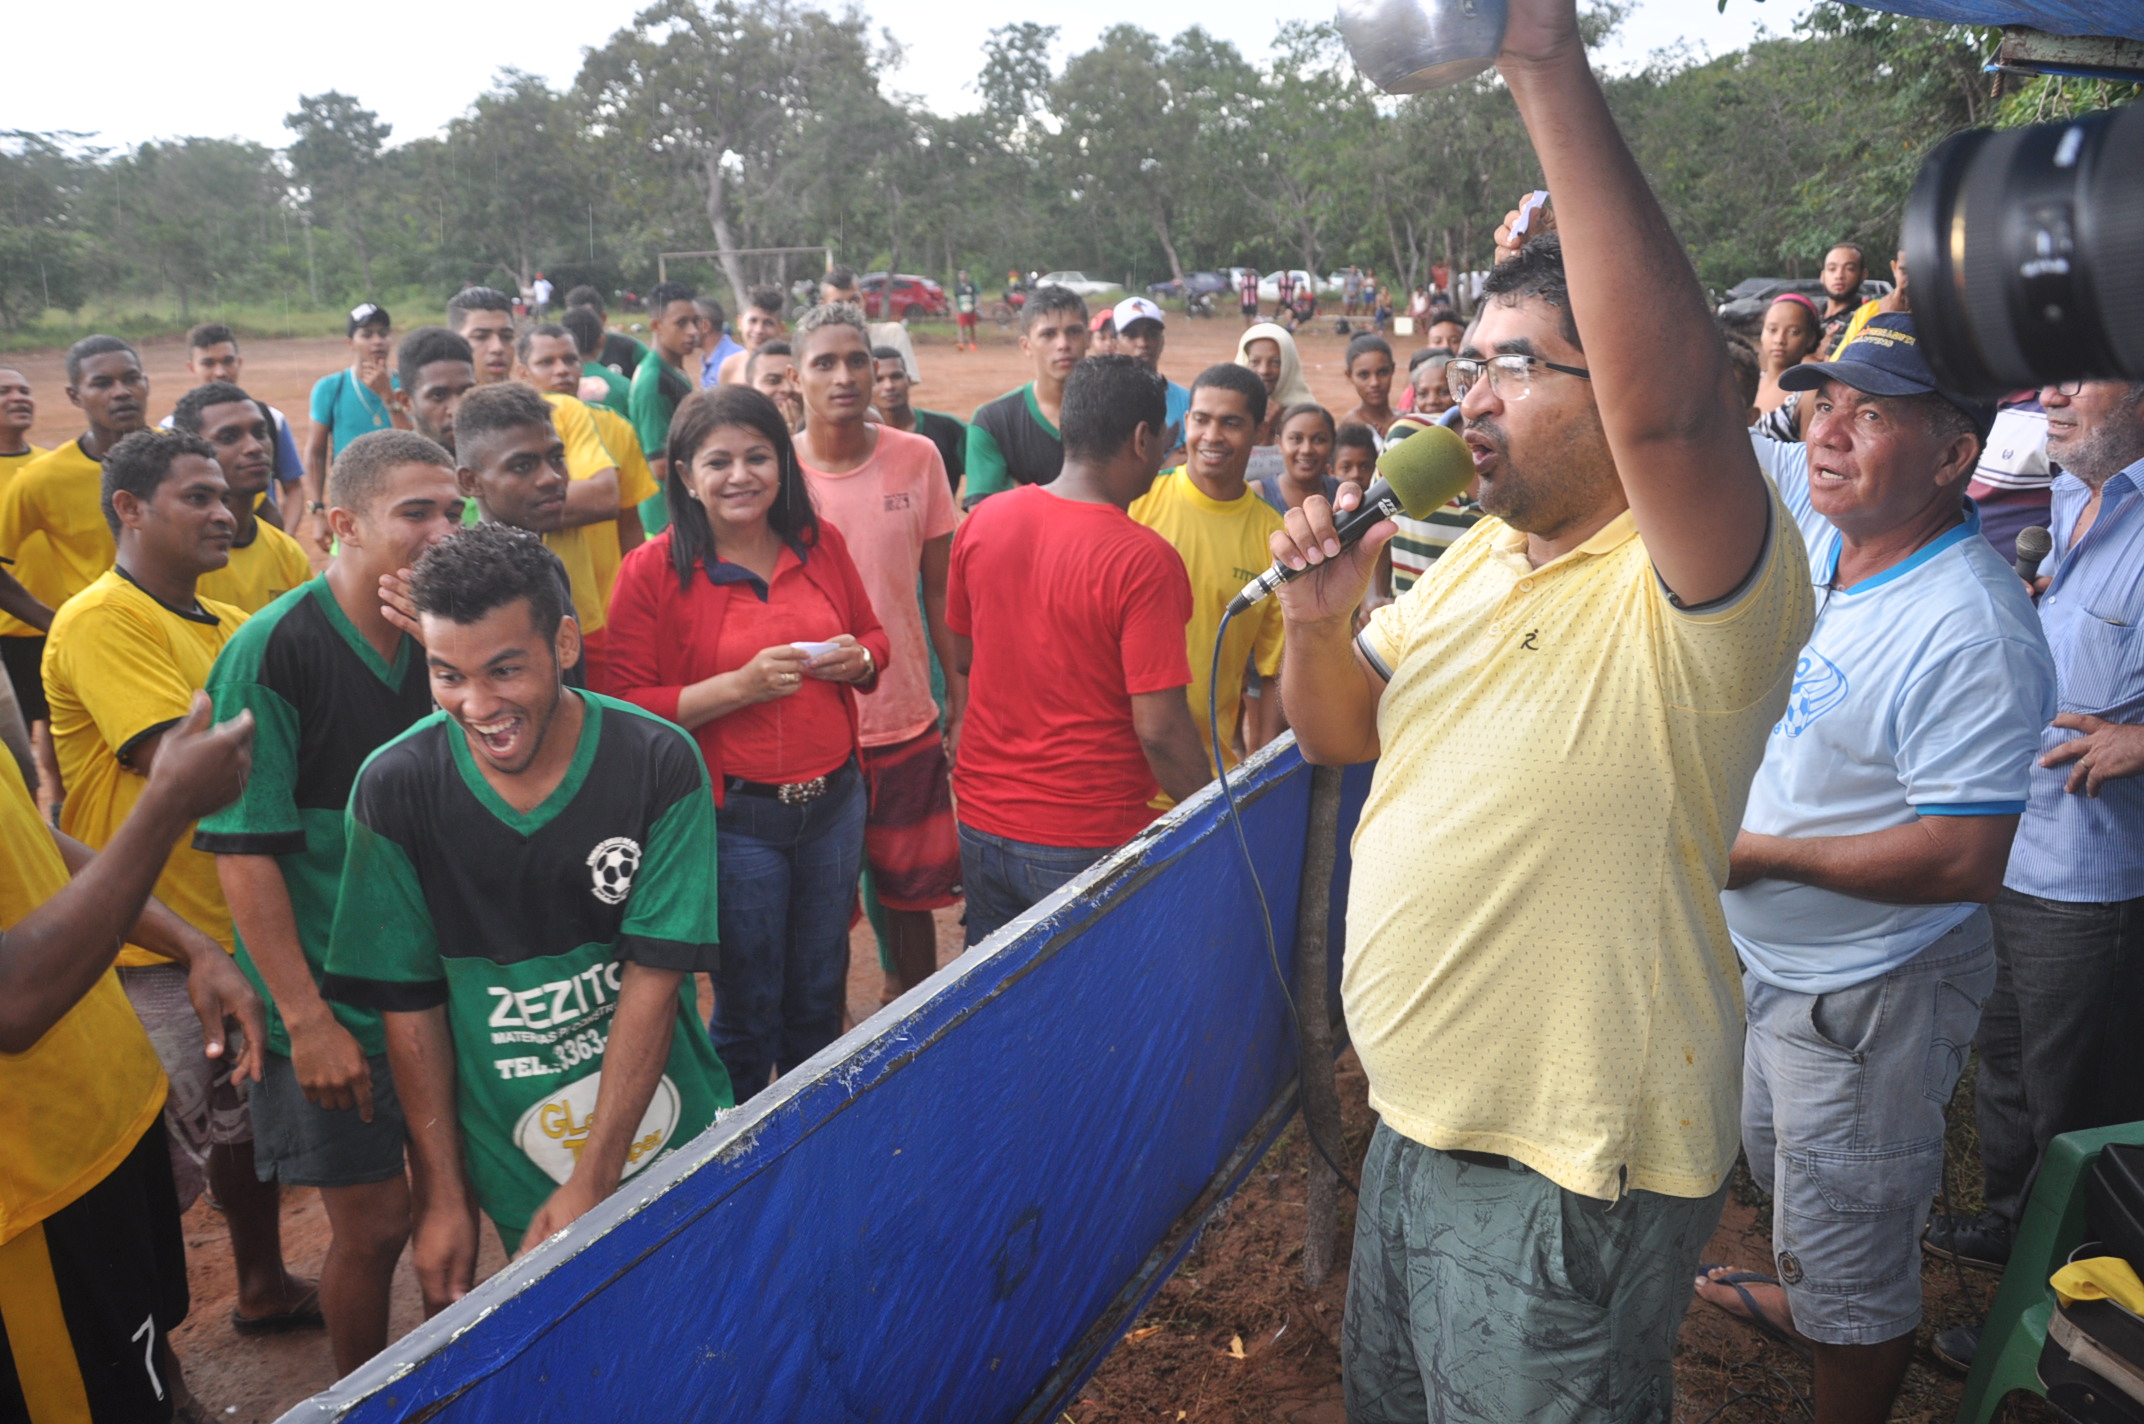 Com apoio da Prefeitura de Porto Nacional zona rural recebe campeonato amador de futebol 5